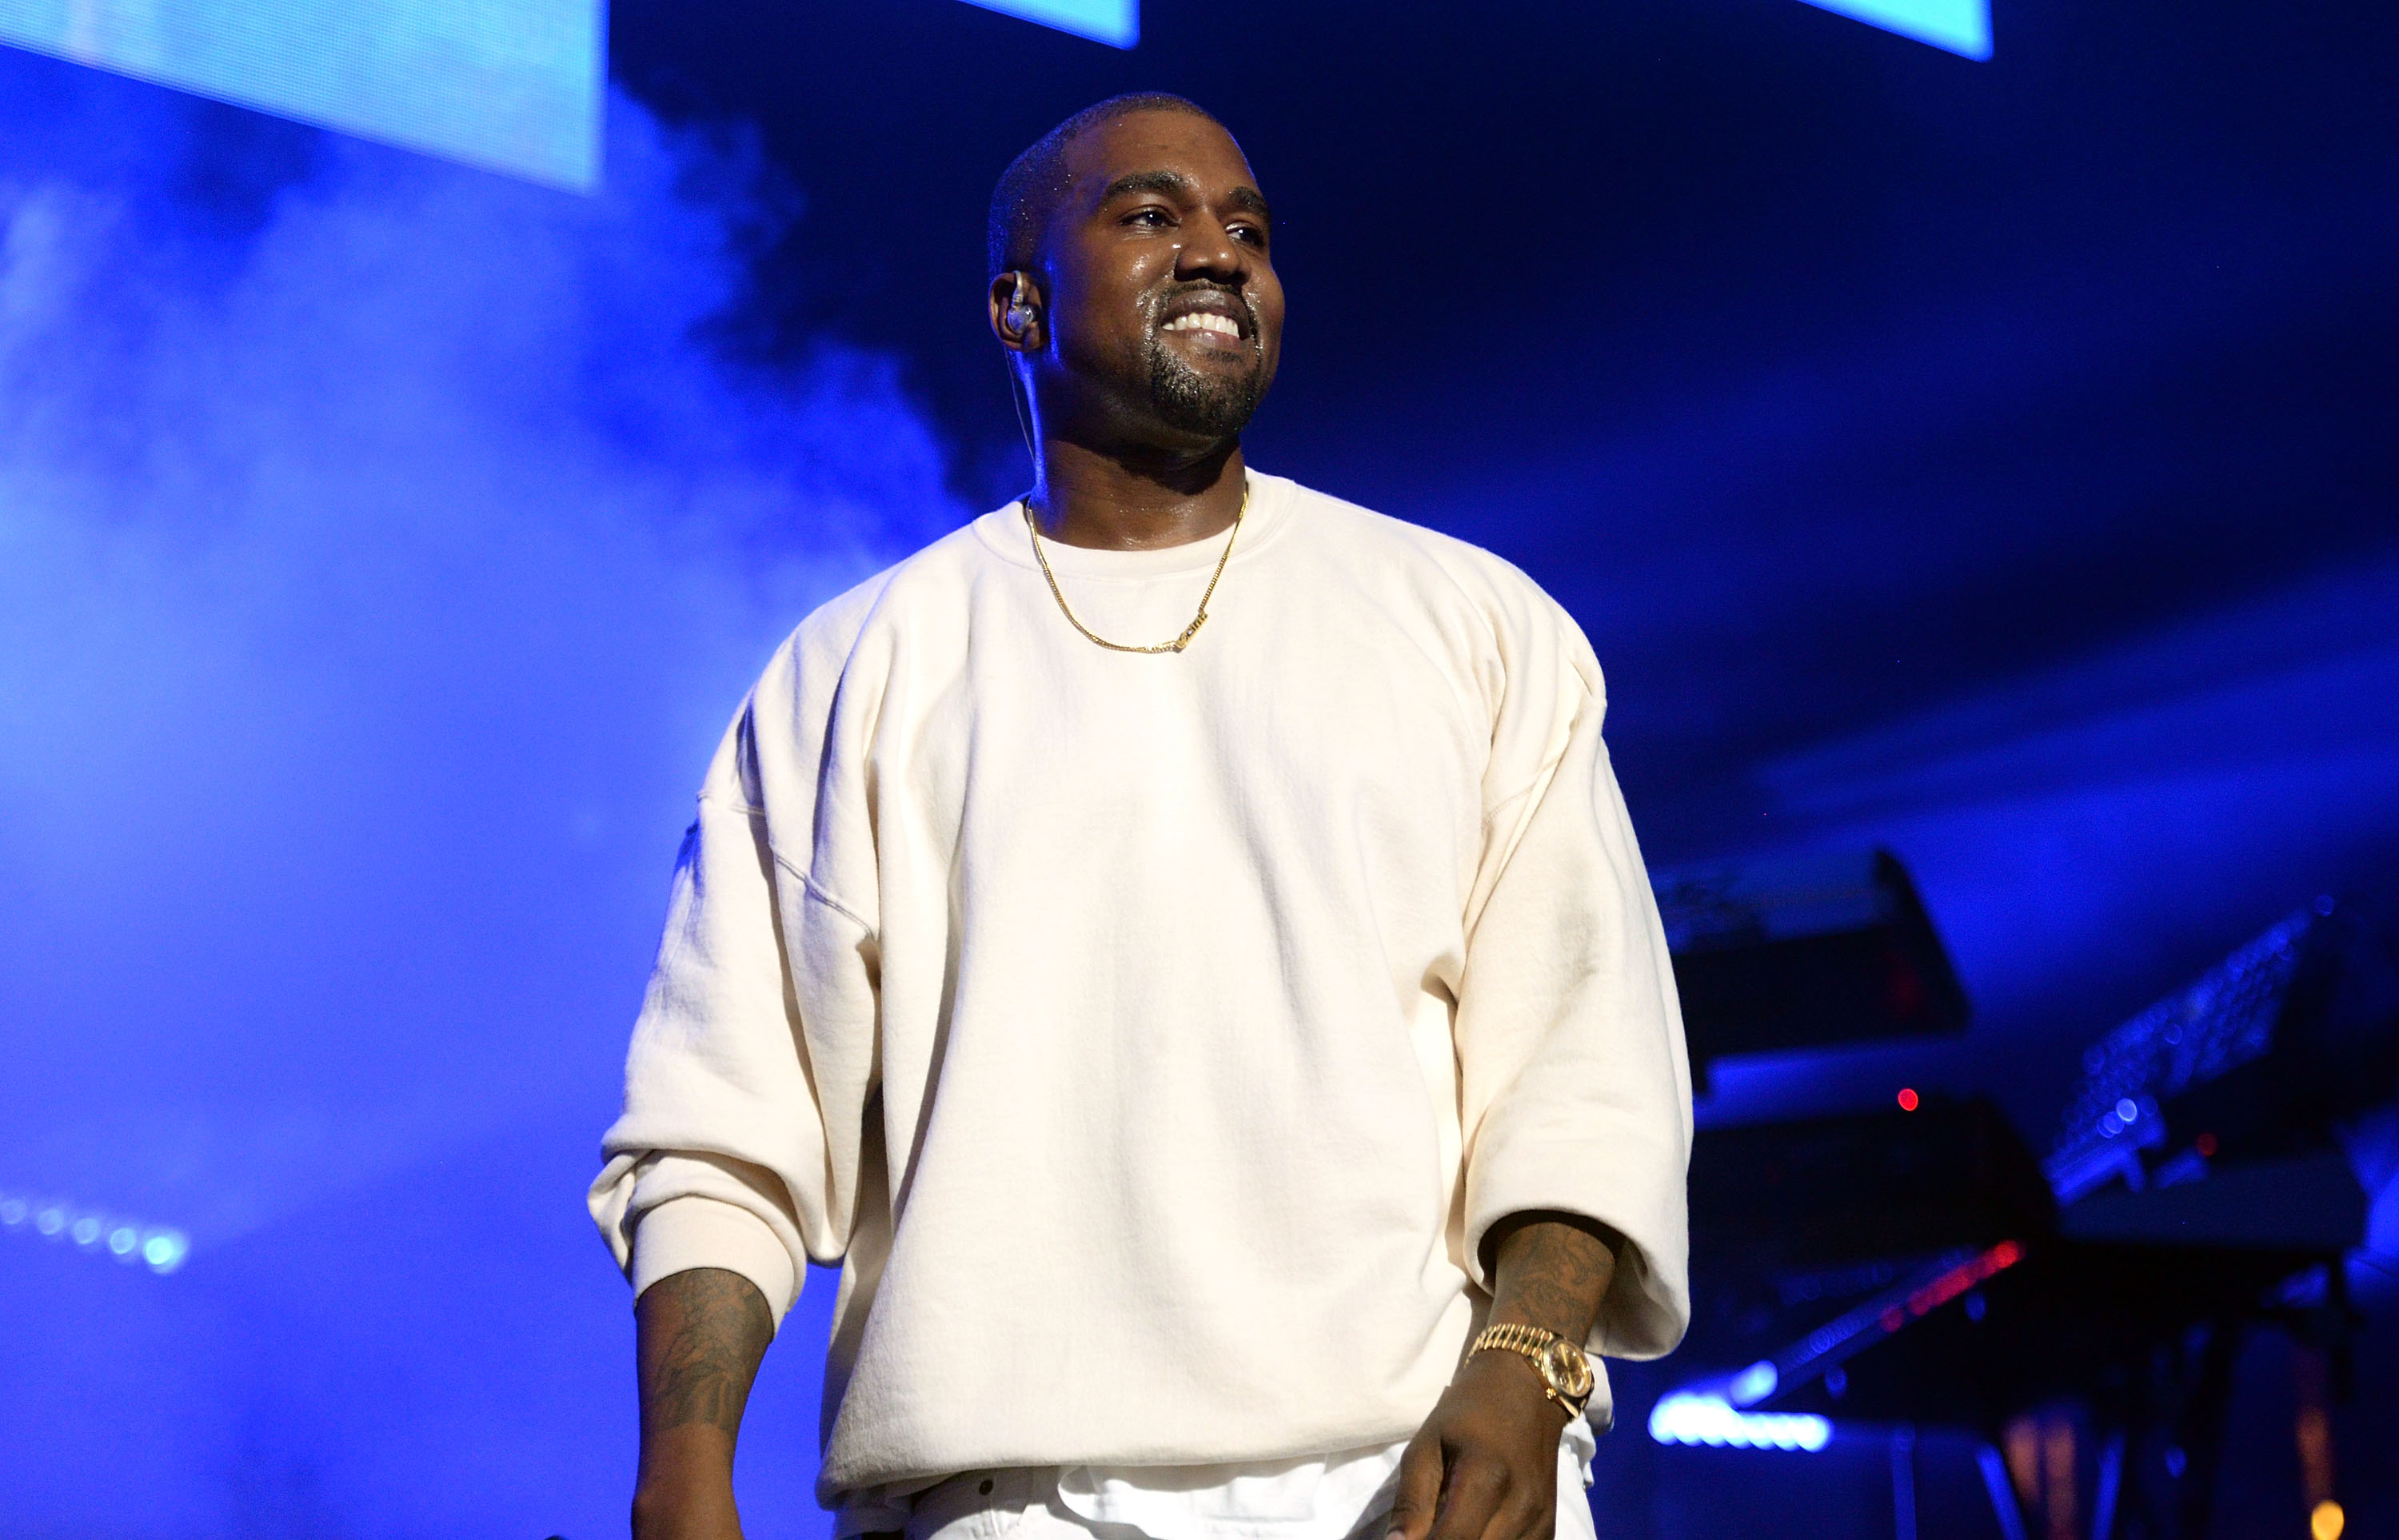 Kanye West v. Walmart Rapper's Battles With Retailer Over